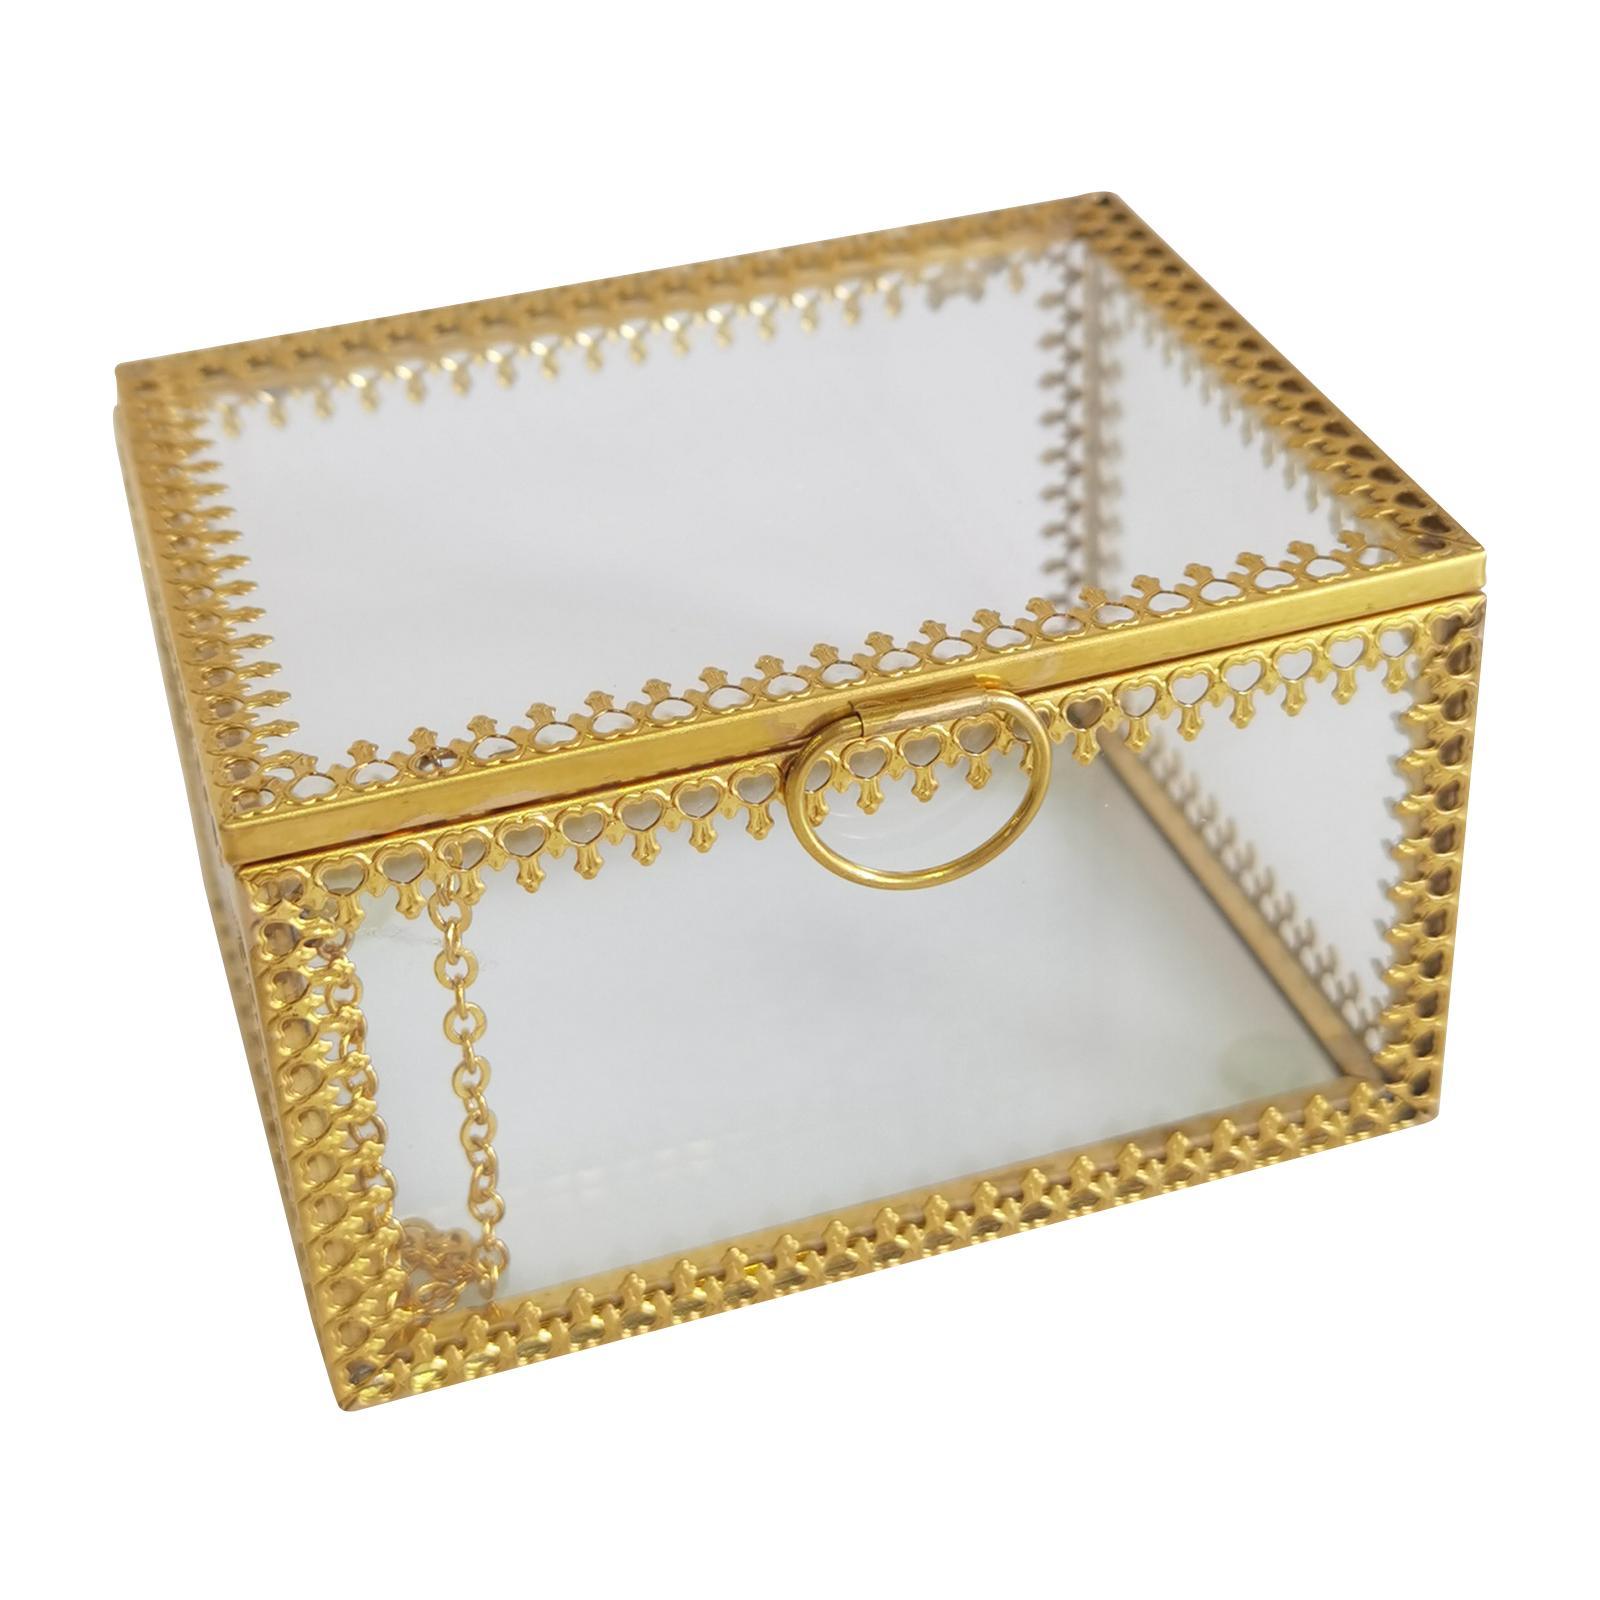 Glass Vintage Jewelry Box Geometric Jewelry Display Organizer Keepsake Box Case